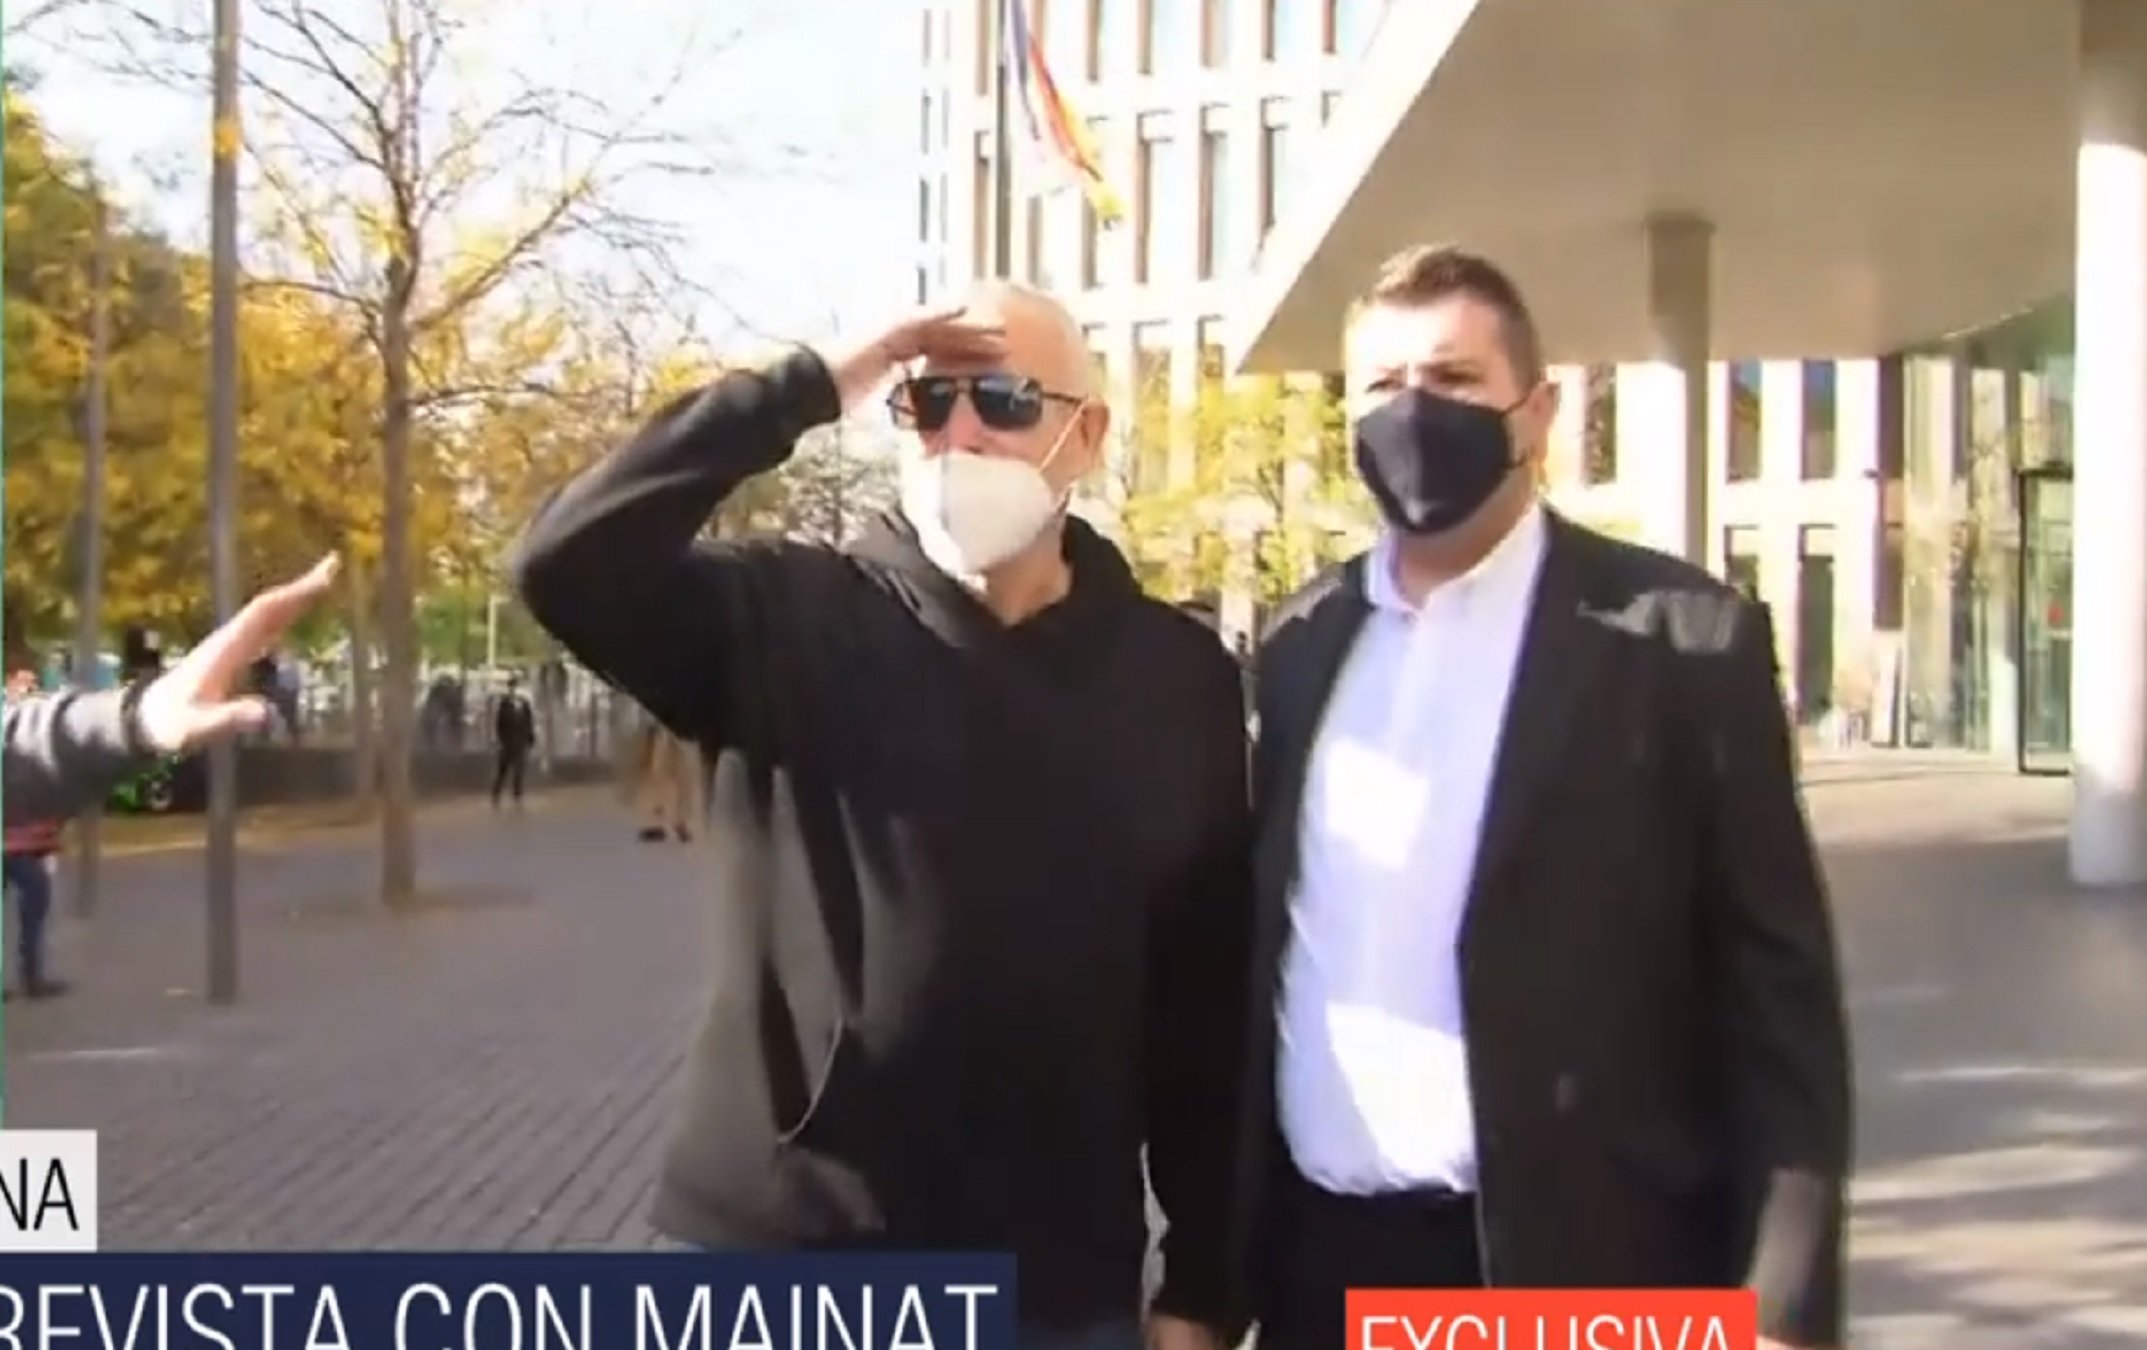 Primeras imágenes de Mainat en los juzgados, sin mascarilla: "Estoy agobiado"